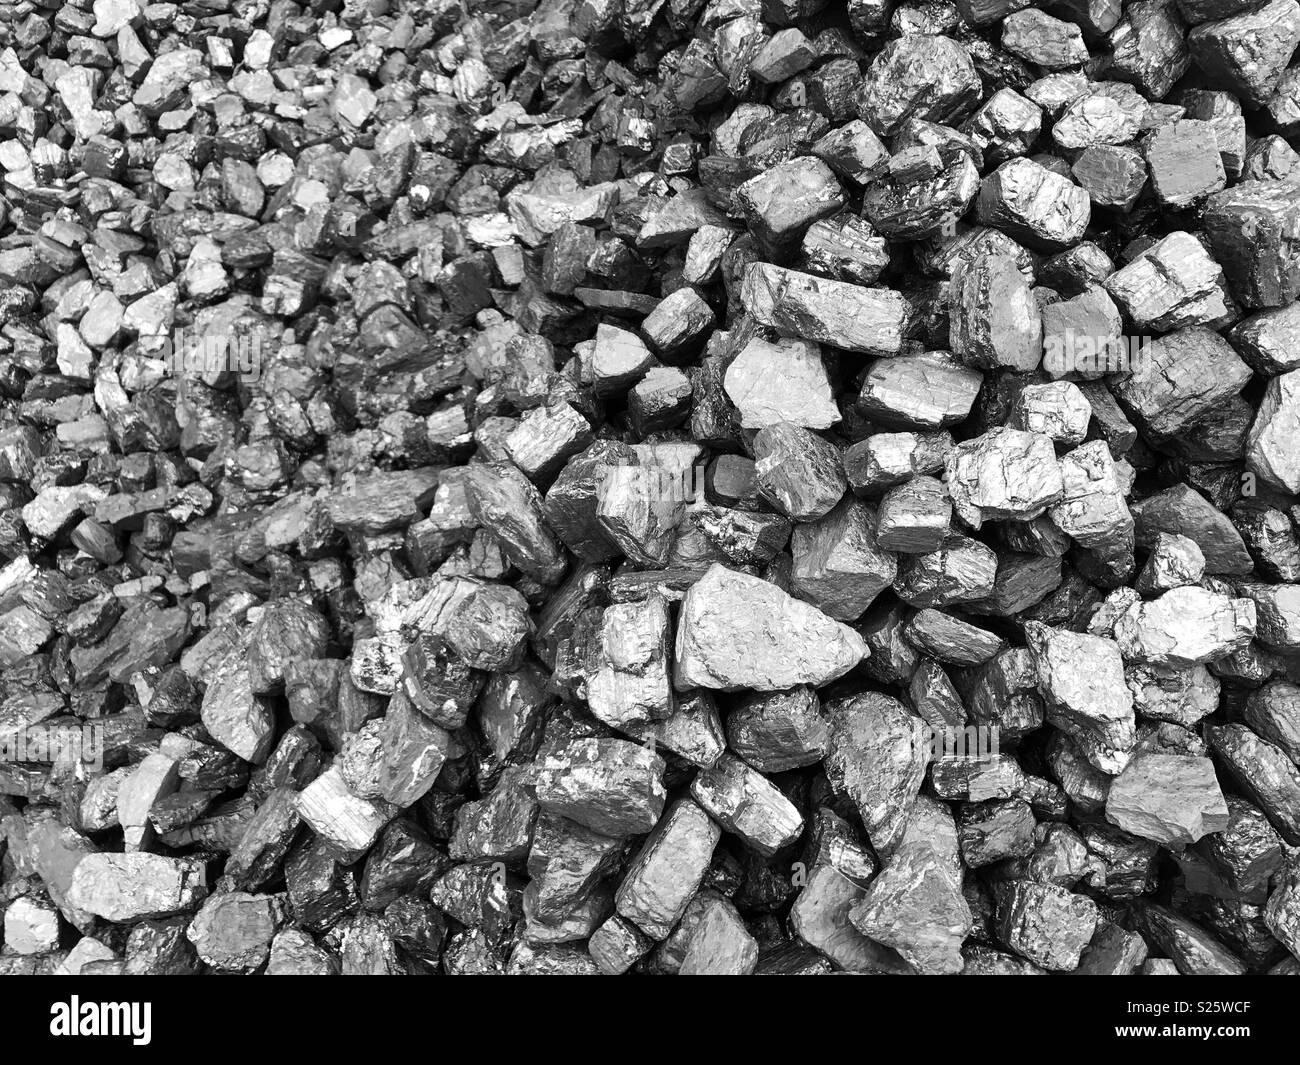 Ein Haufen Kohle. Klumpen von Kohle, ein fossiler Brennstoff verwendet, um Wärme und Strom zu erzeugen. Stockfoto